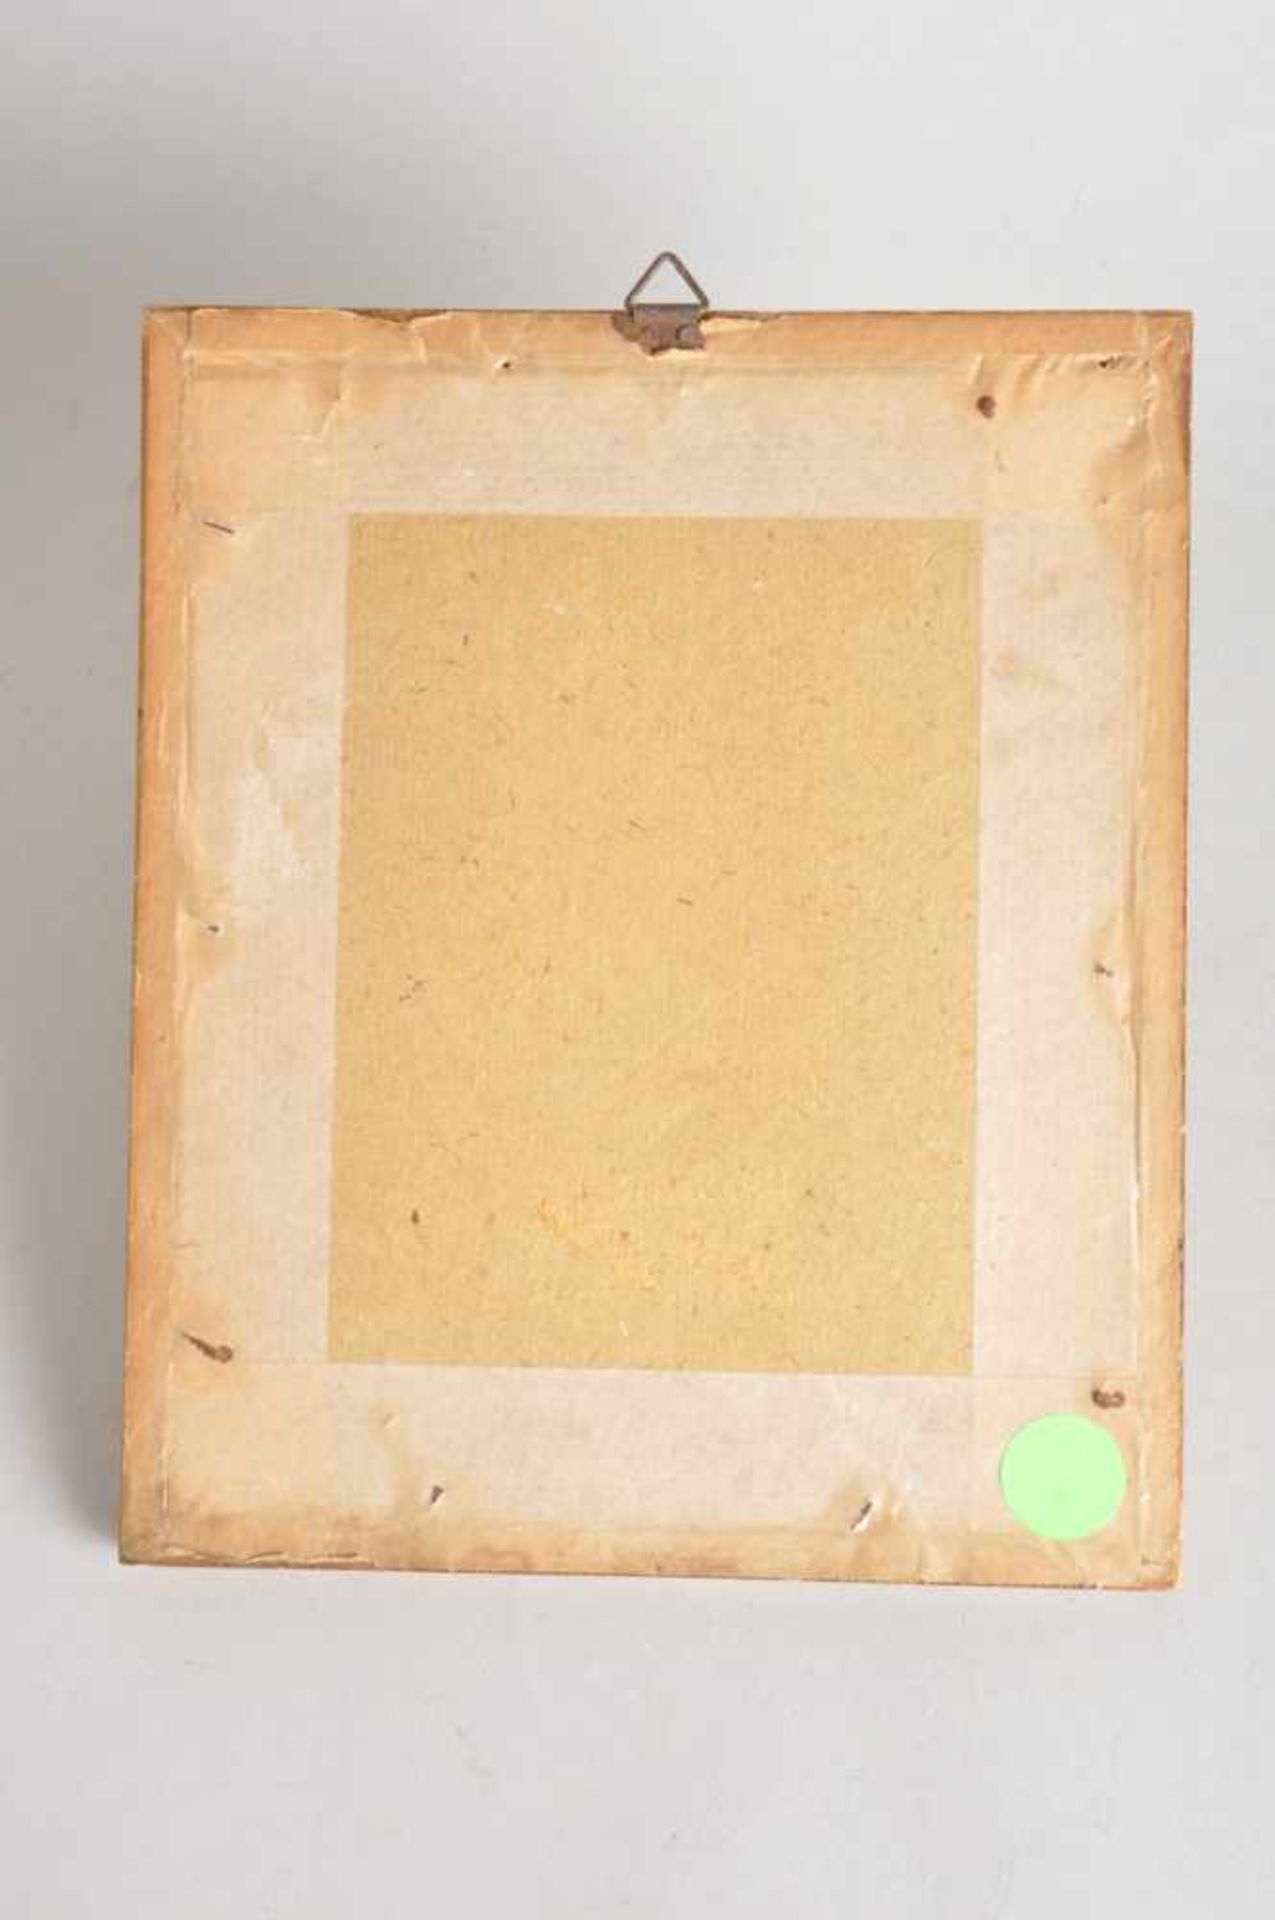 Chinesischer Brokat mit Goldfäden.Wohl 19. Jahrhundert. Rahmen 15,5 x 18,5 cm. - Image 2 of 3